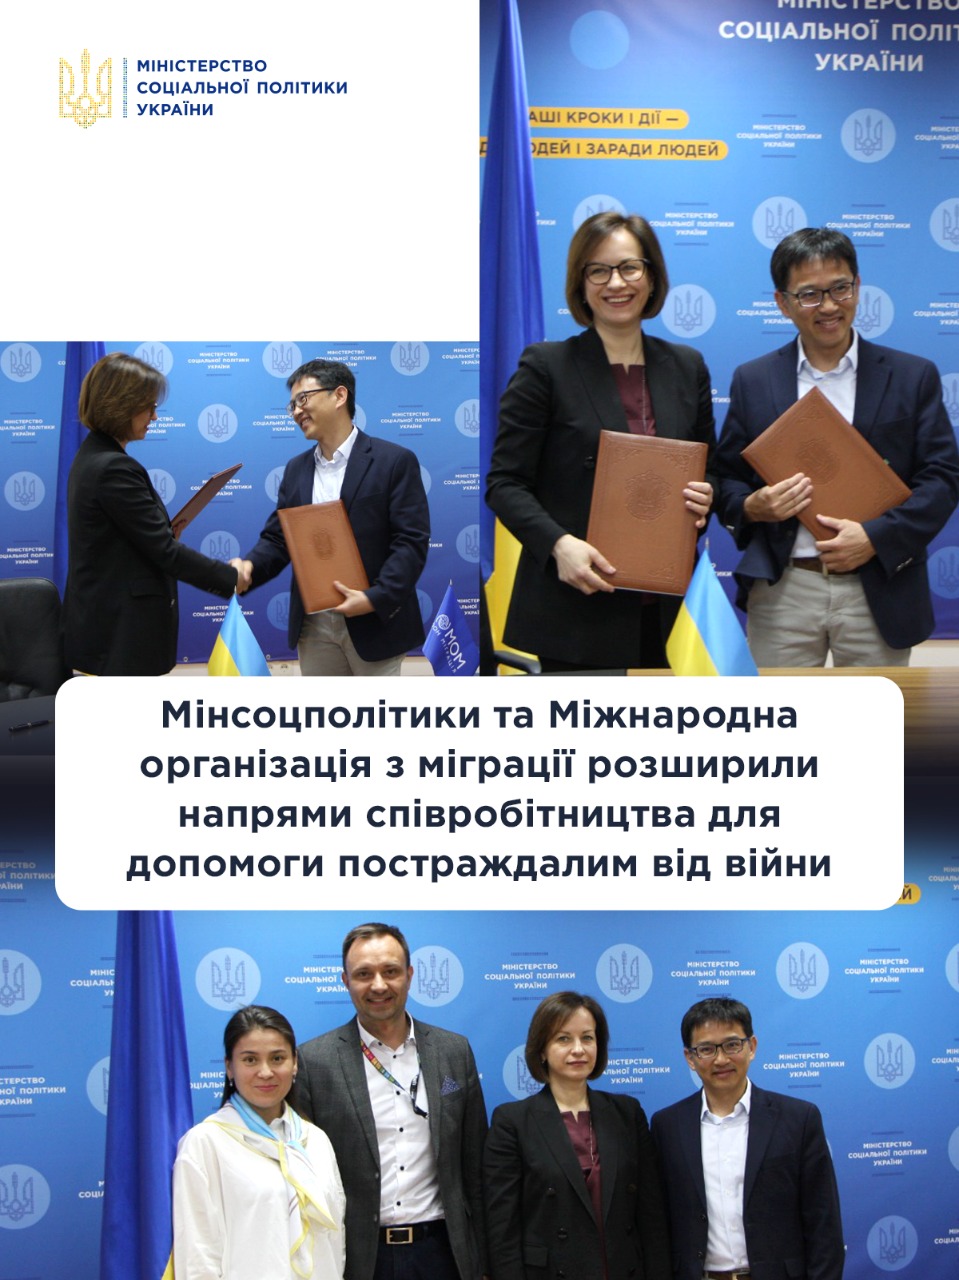 Украинцы могут получить по 6600 грн от международной организации по миграции, - Минсоцполитики